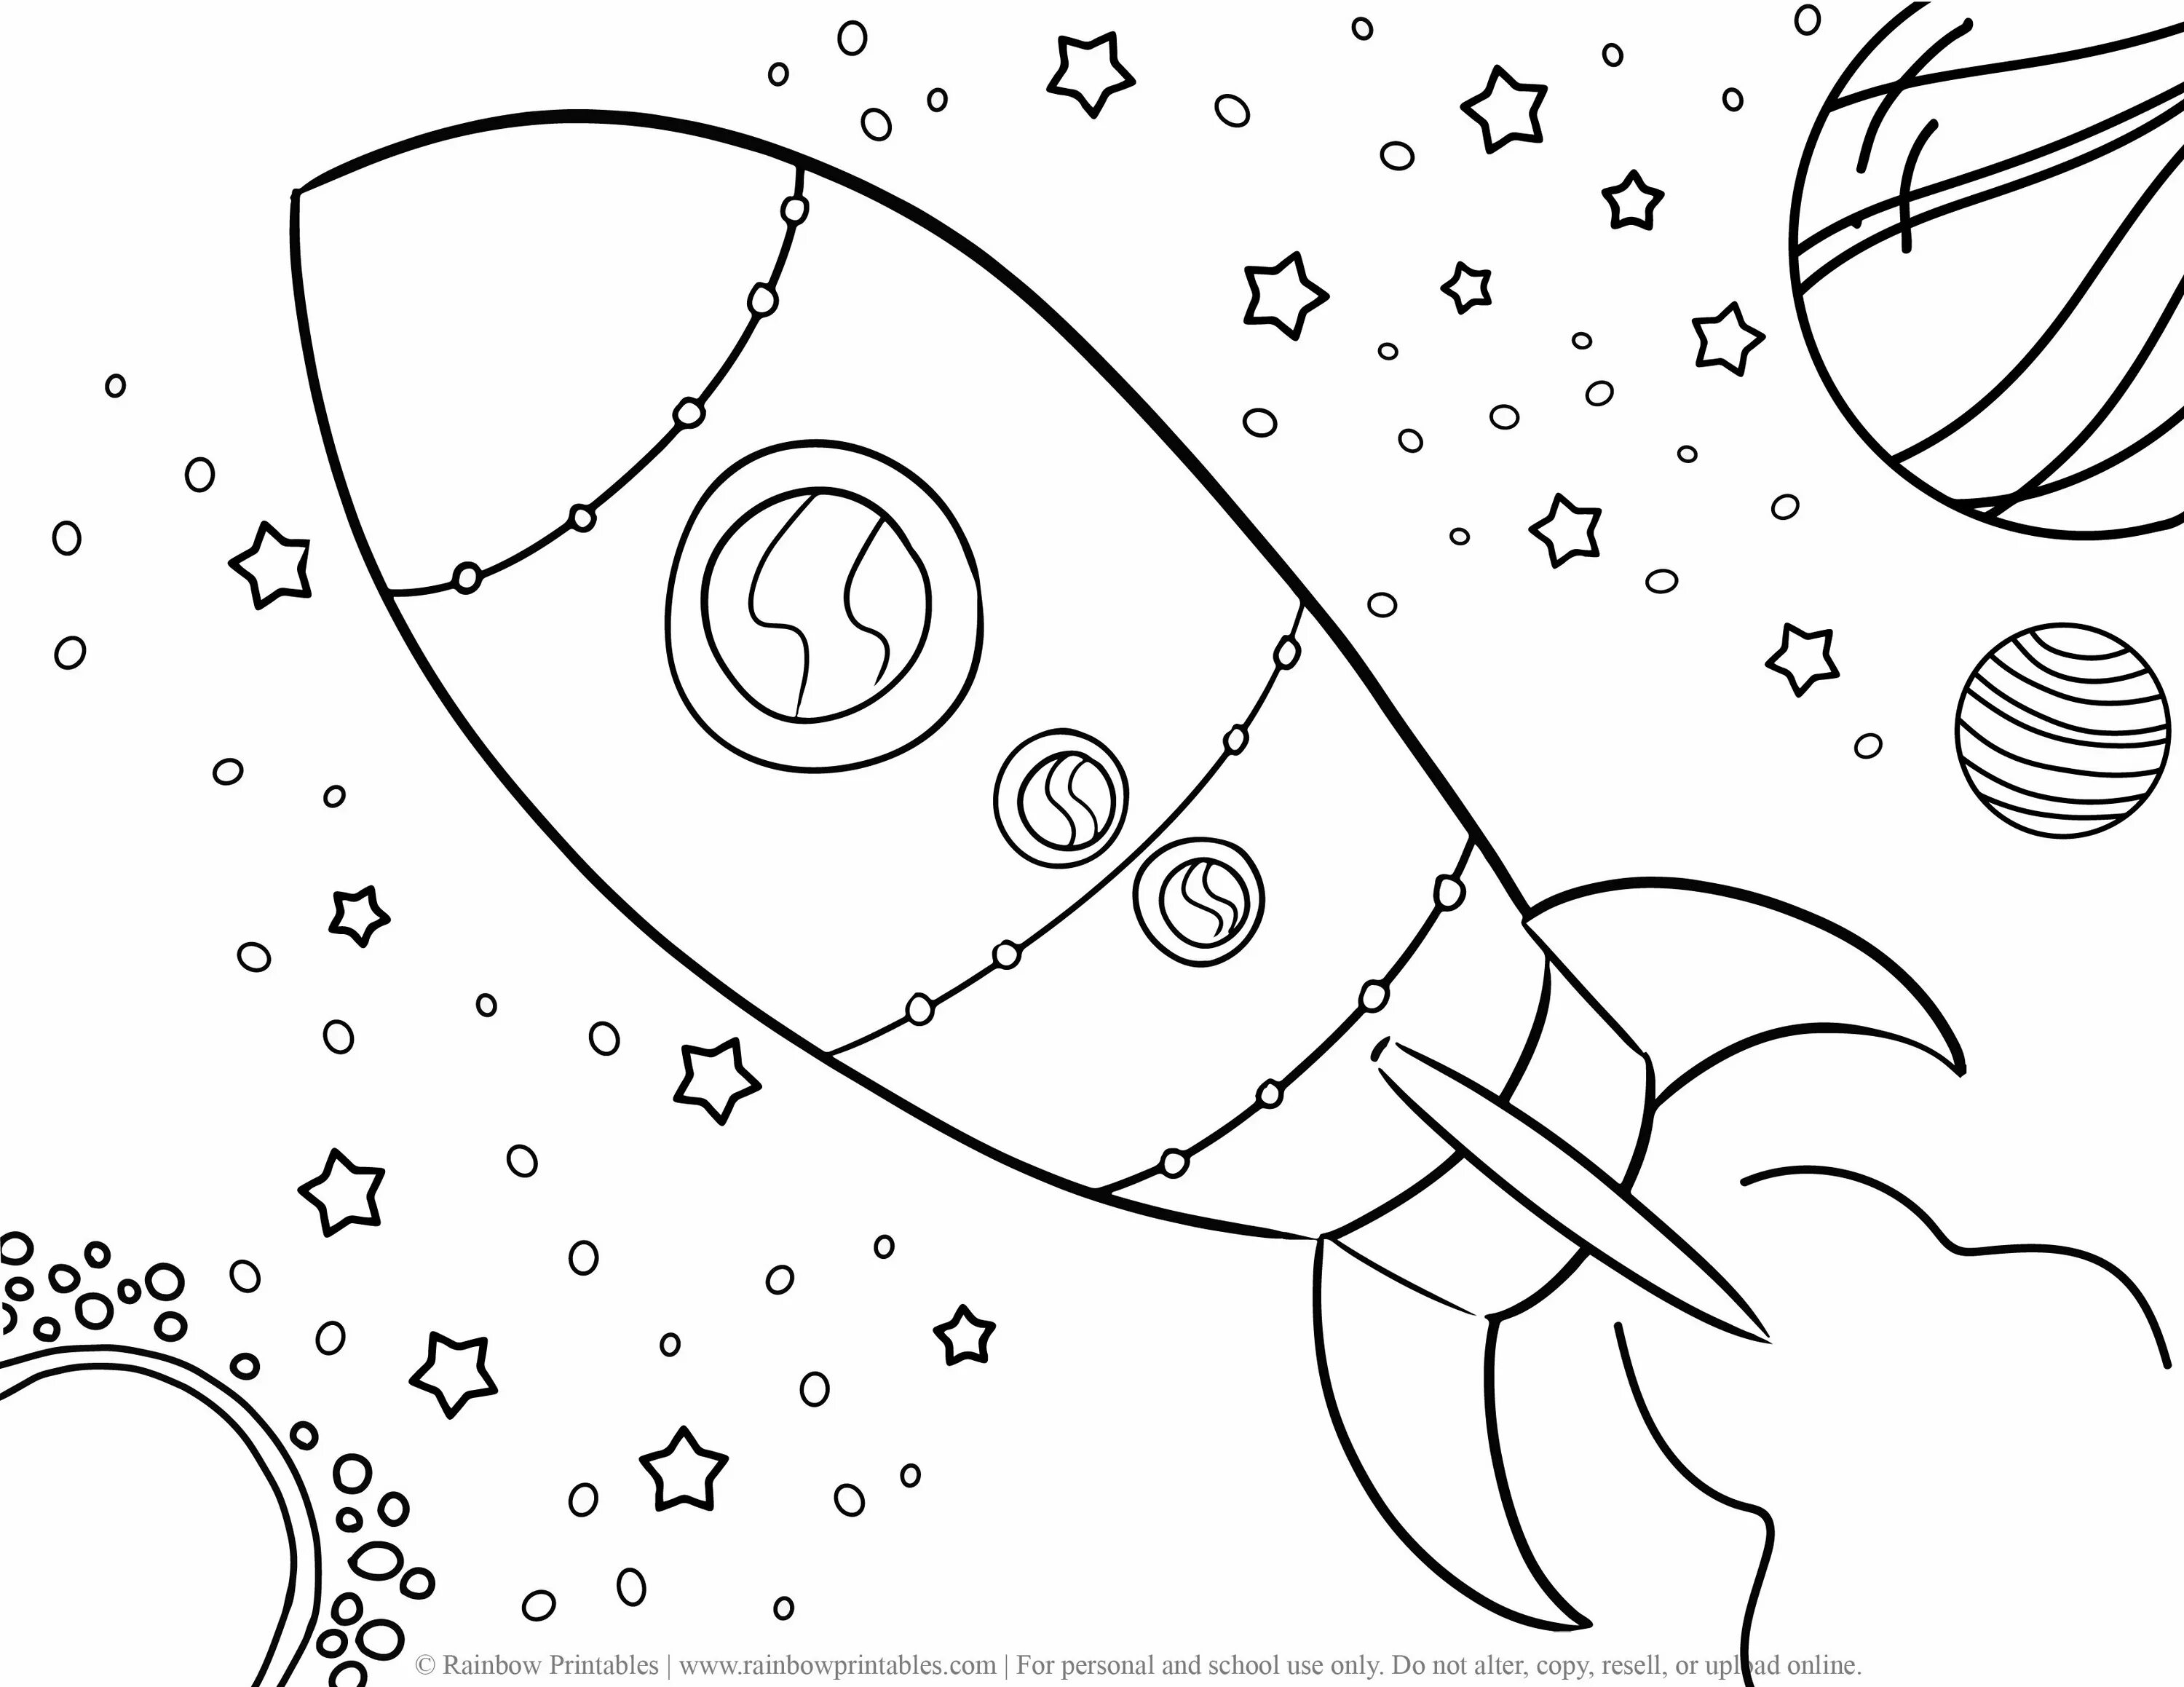 Космос раскраска для детей. Космос карандашом. Раскраска космос и планеты для детей. Раскраска для малышей. Космос.